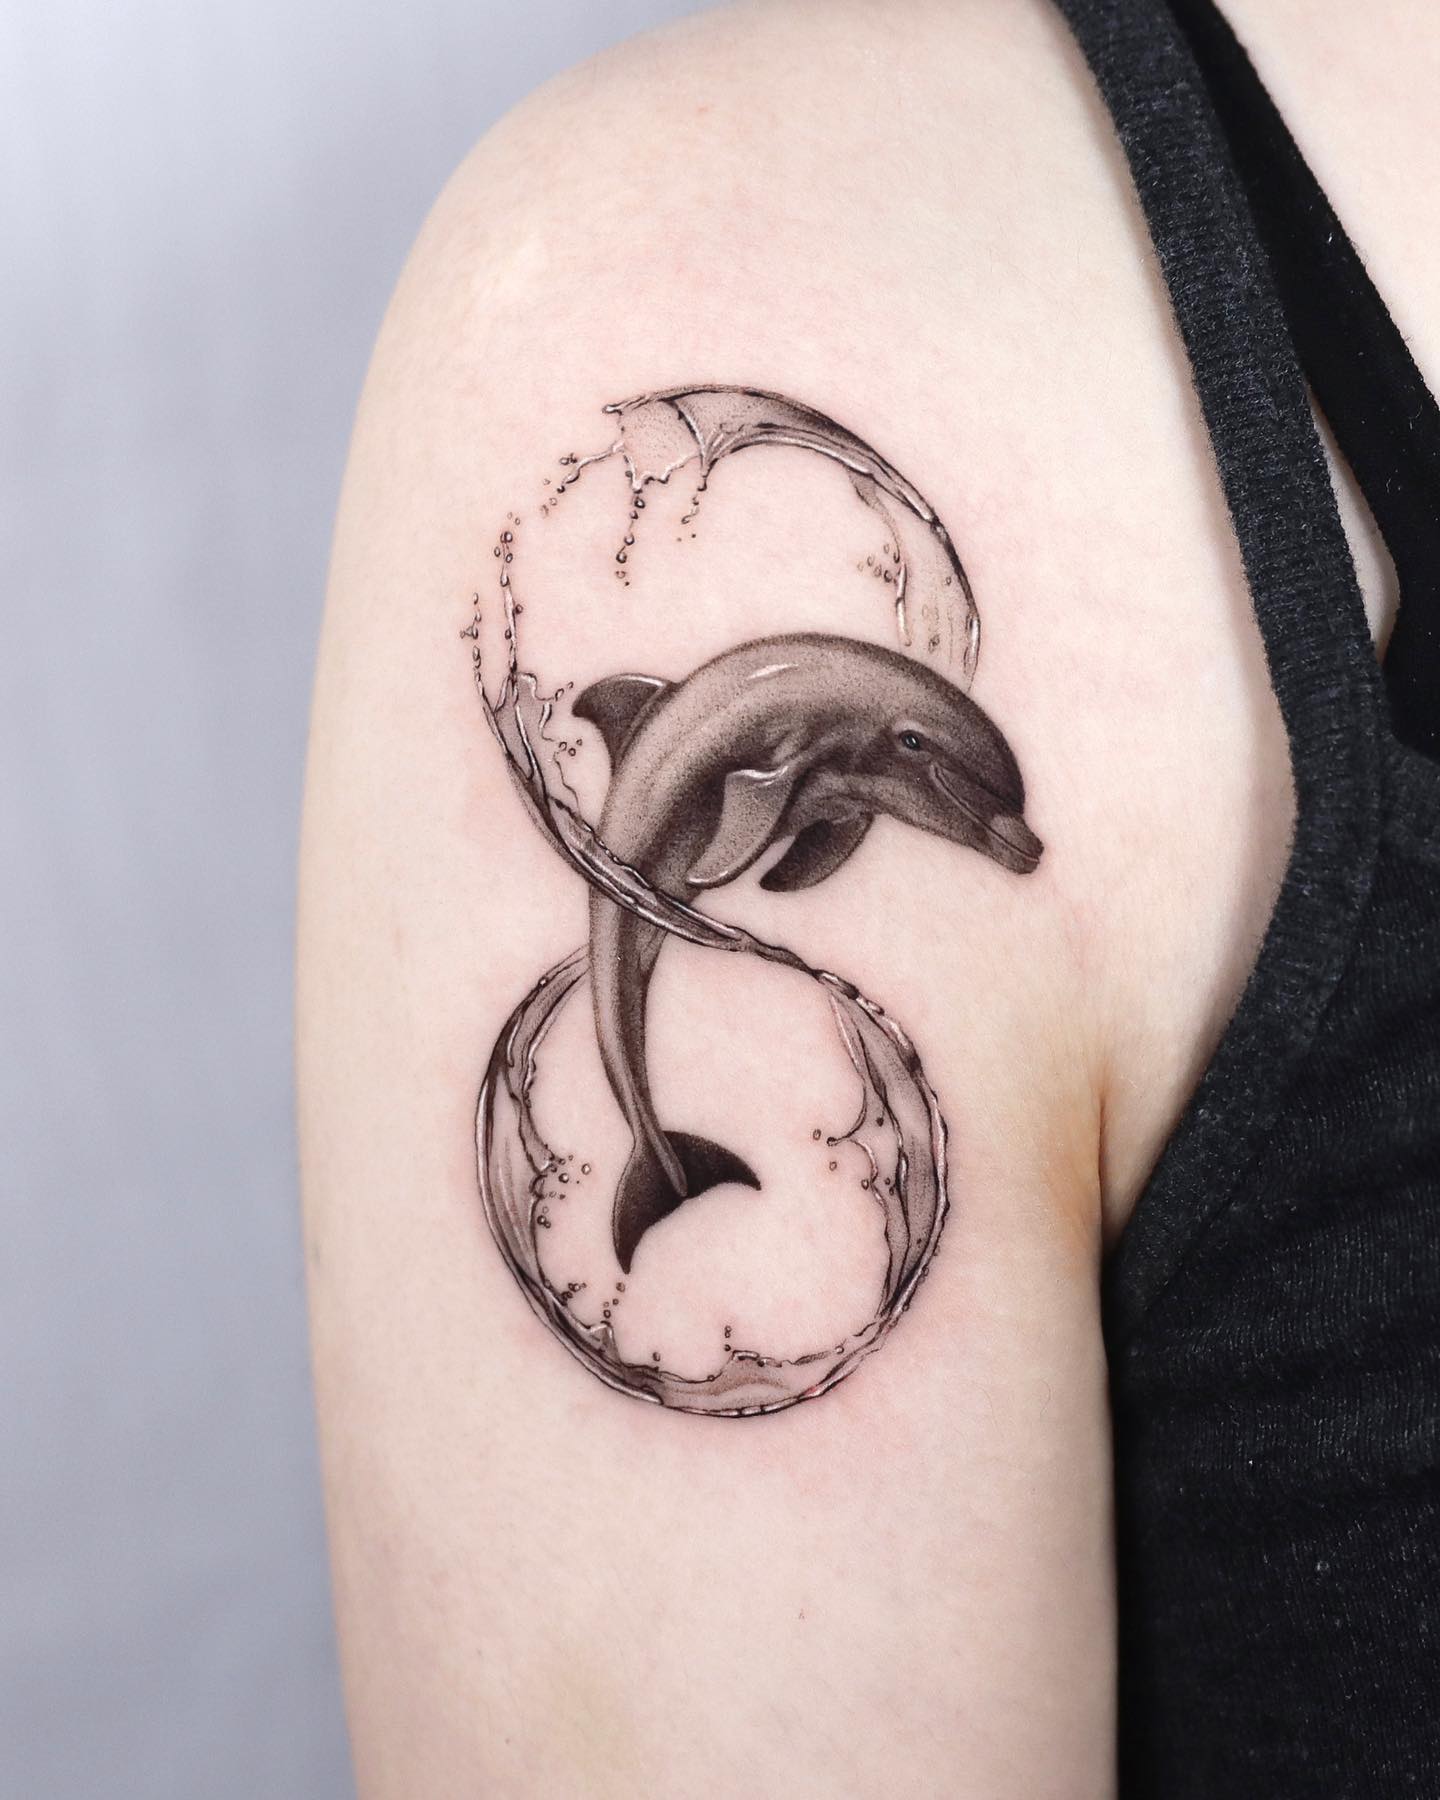 Tatuaje de delfín en el hombro con tinta negra.